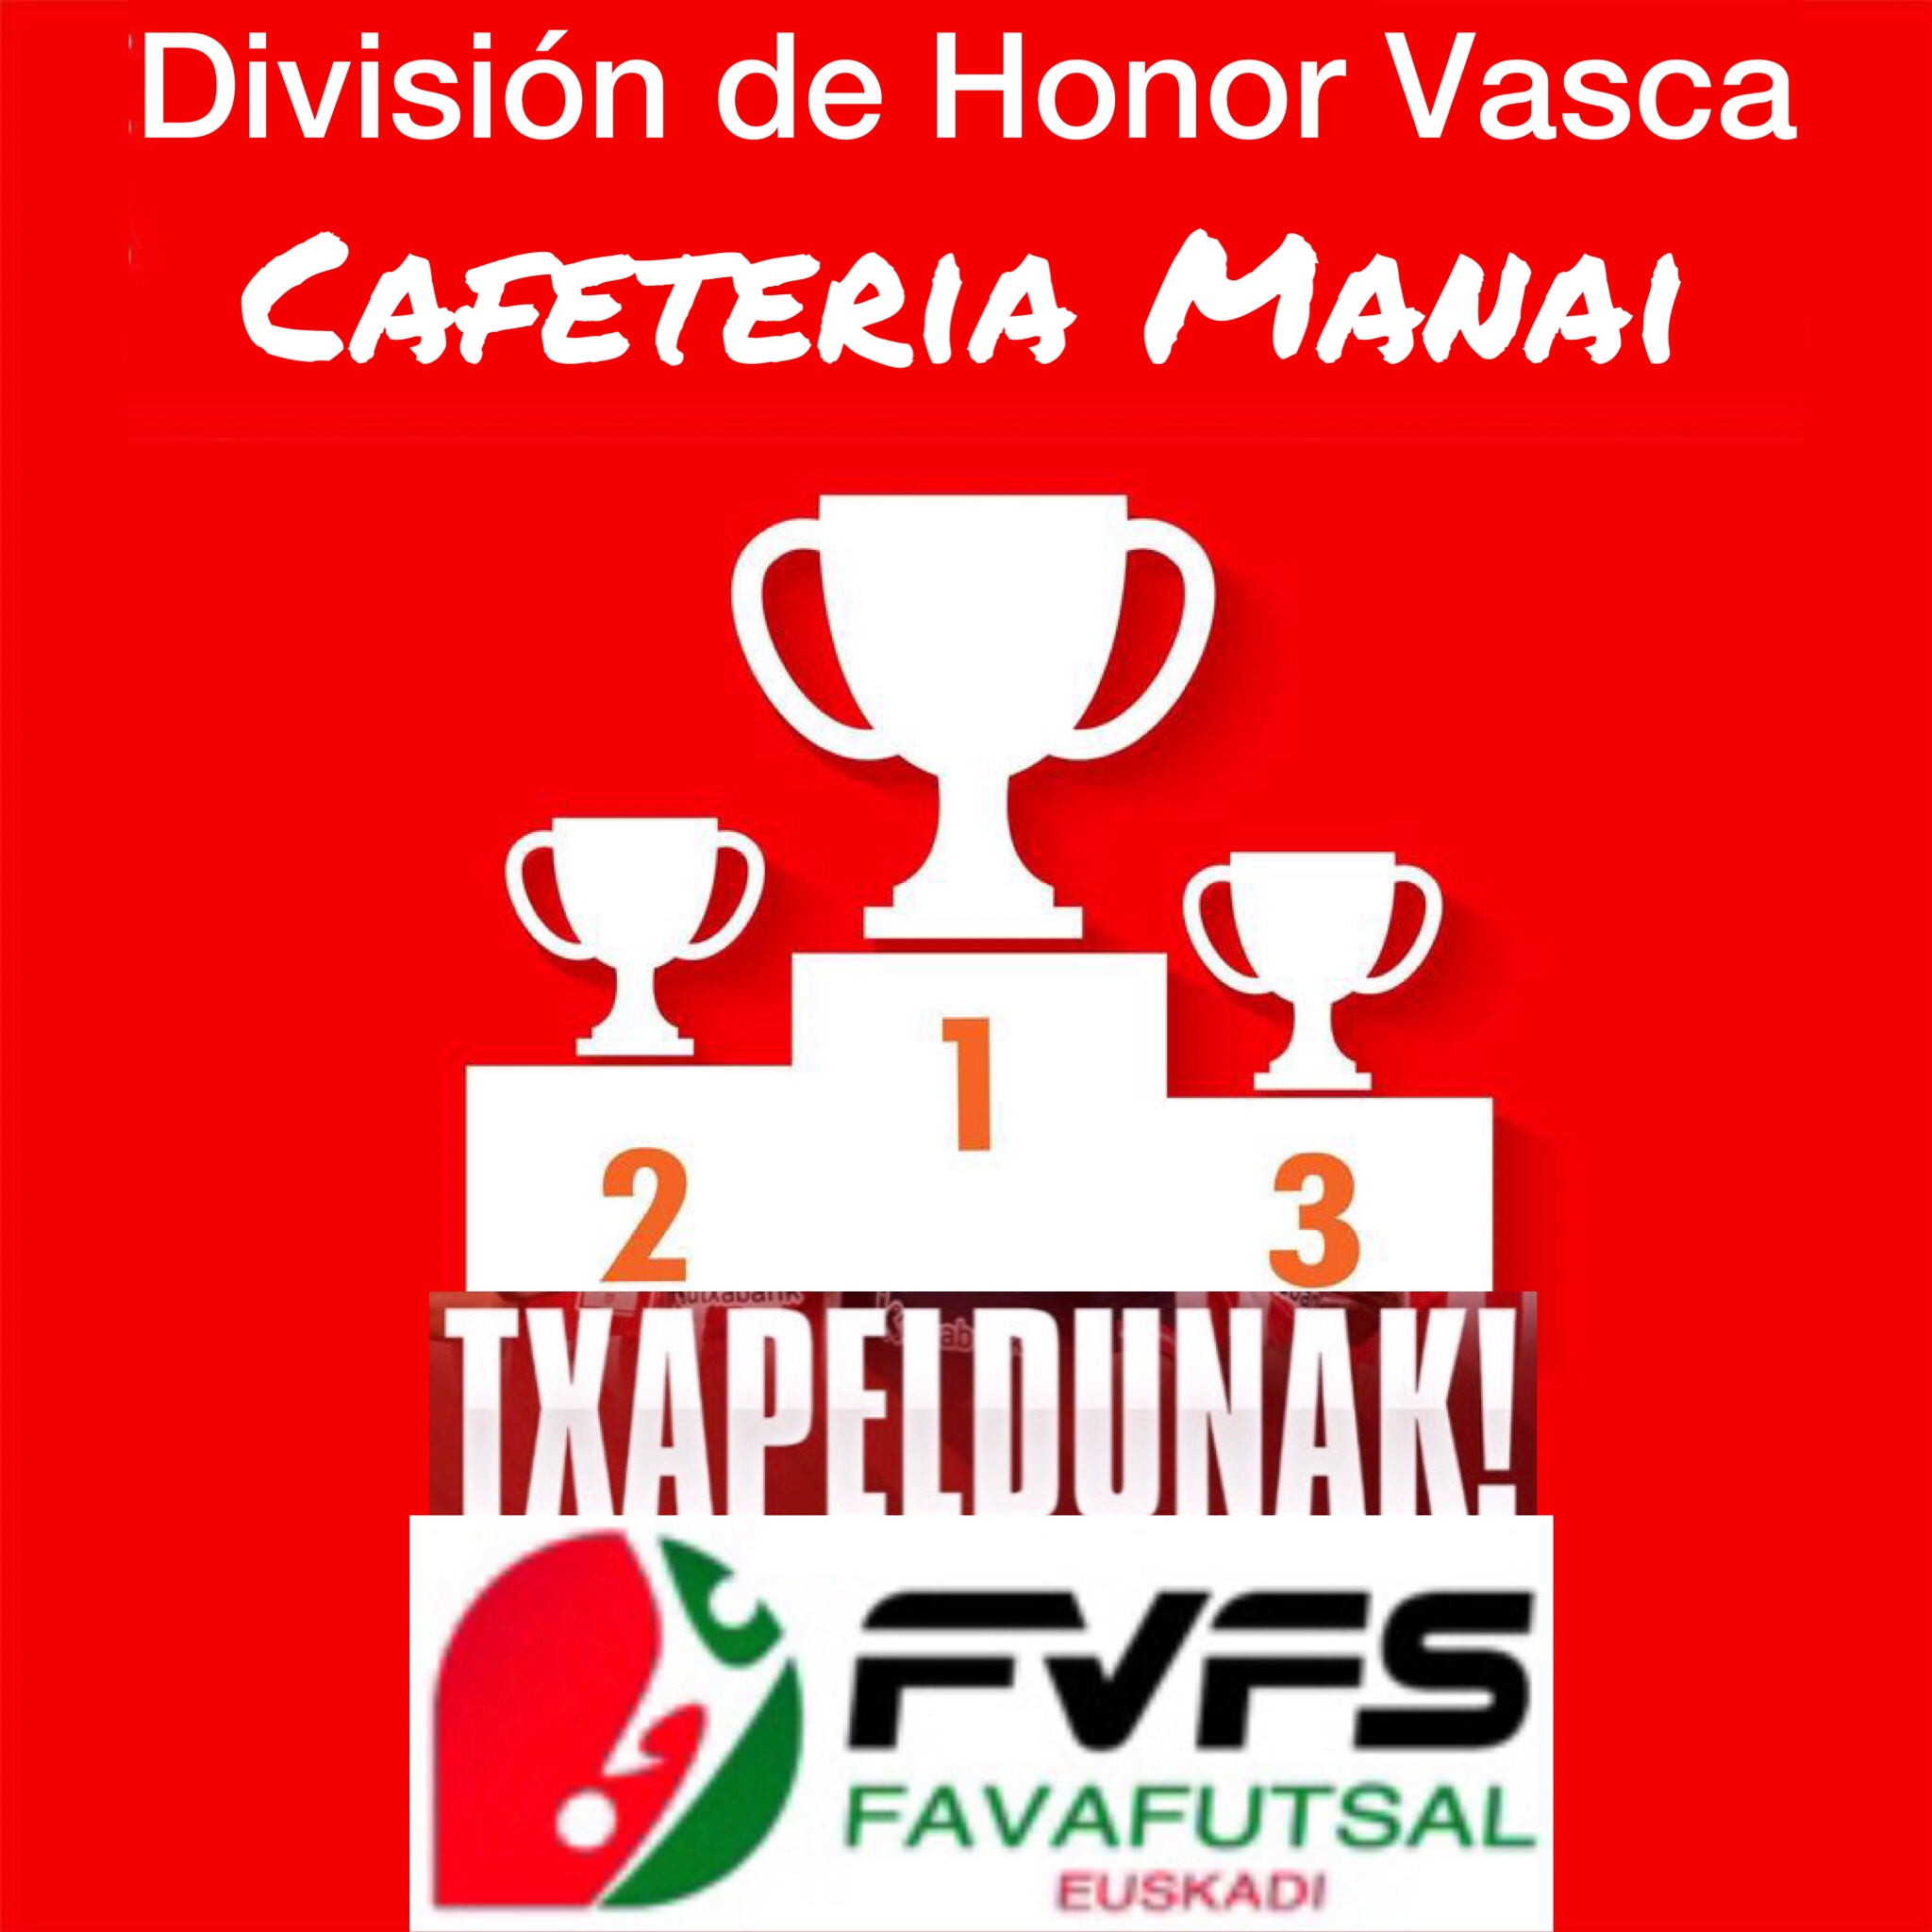 Cafetería Manai, campeón de División de Honor Vasca, temporada 2021/2022.